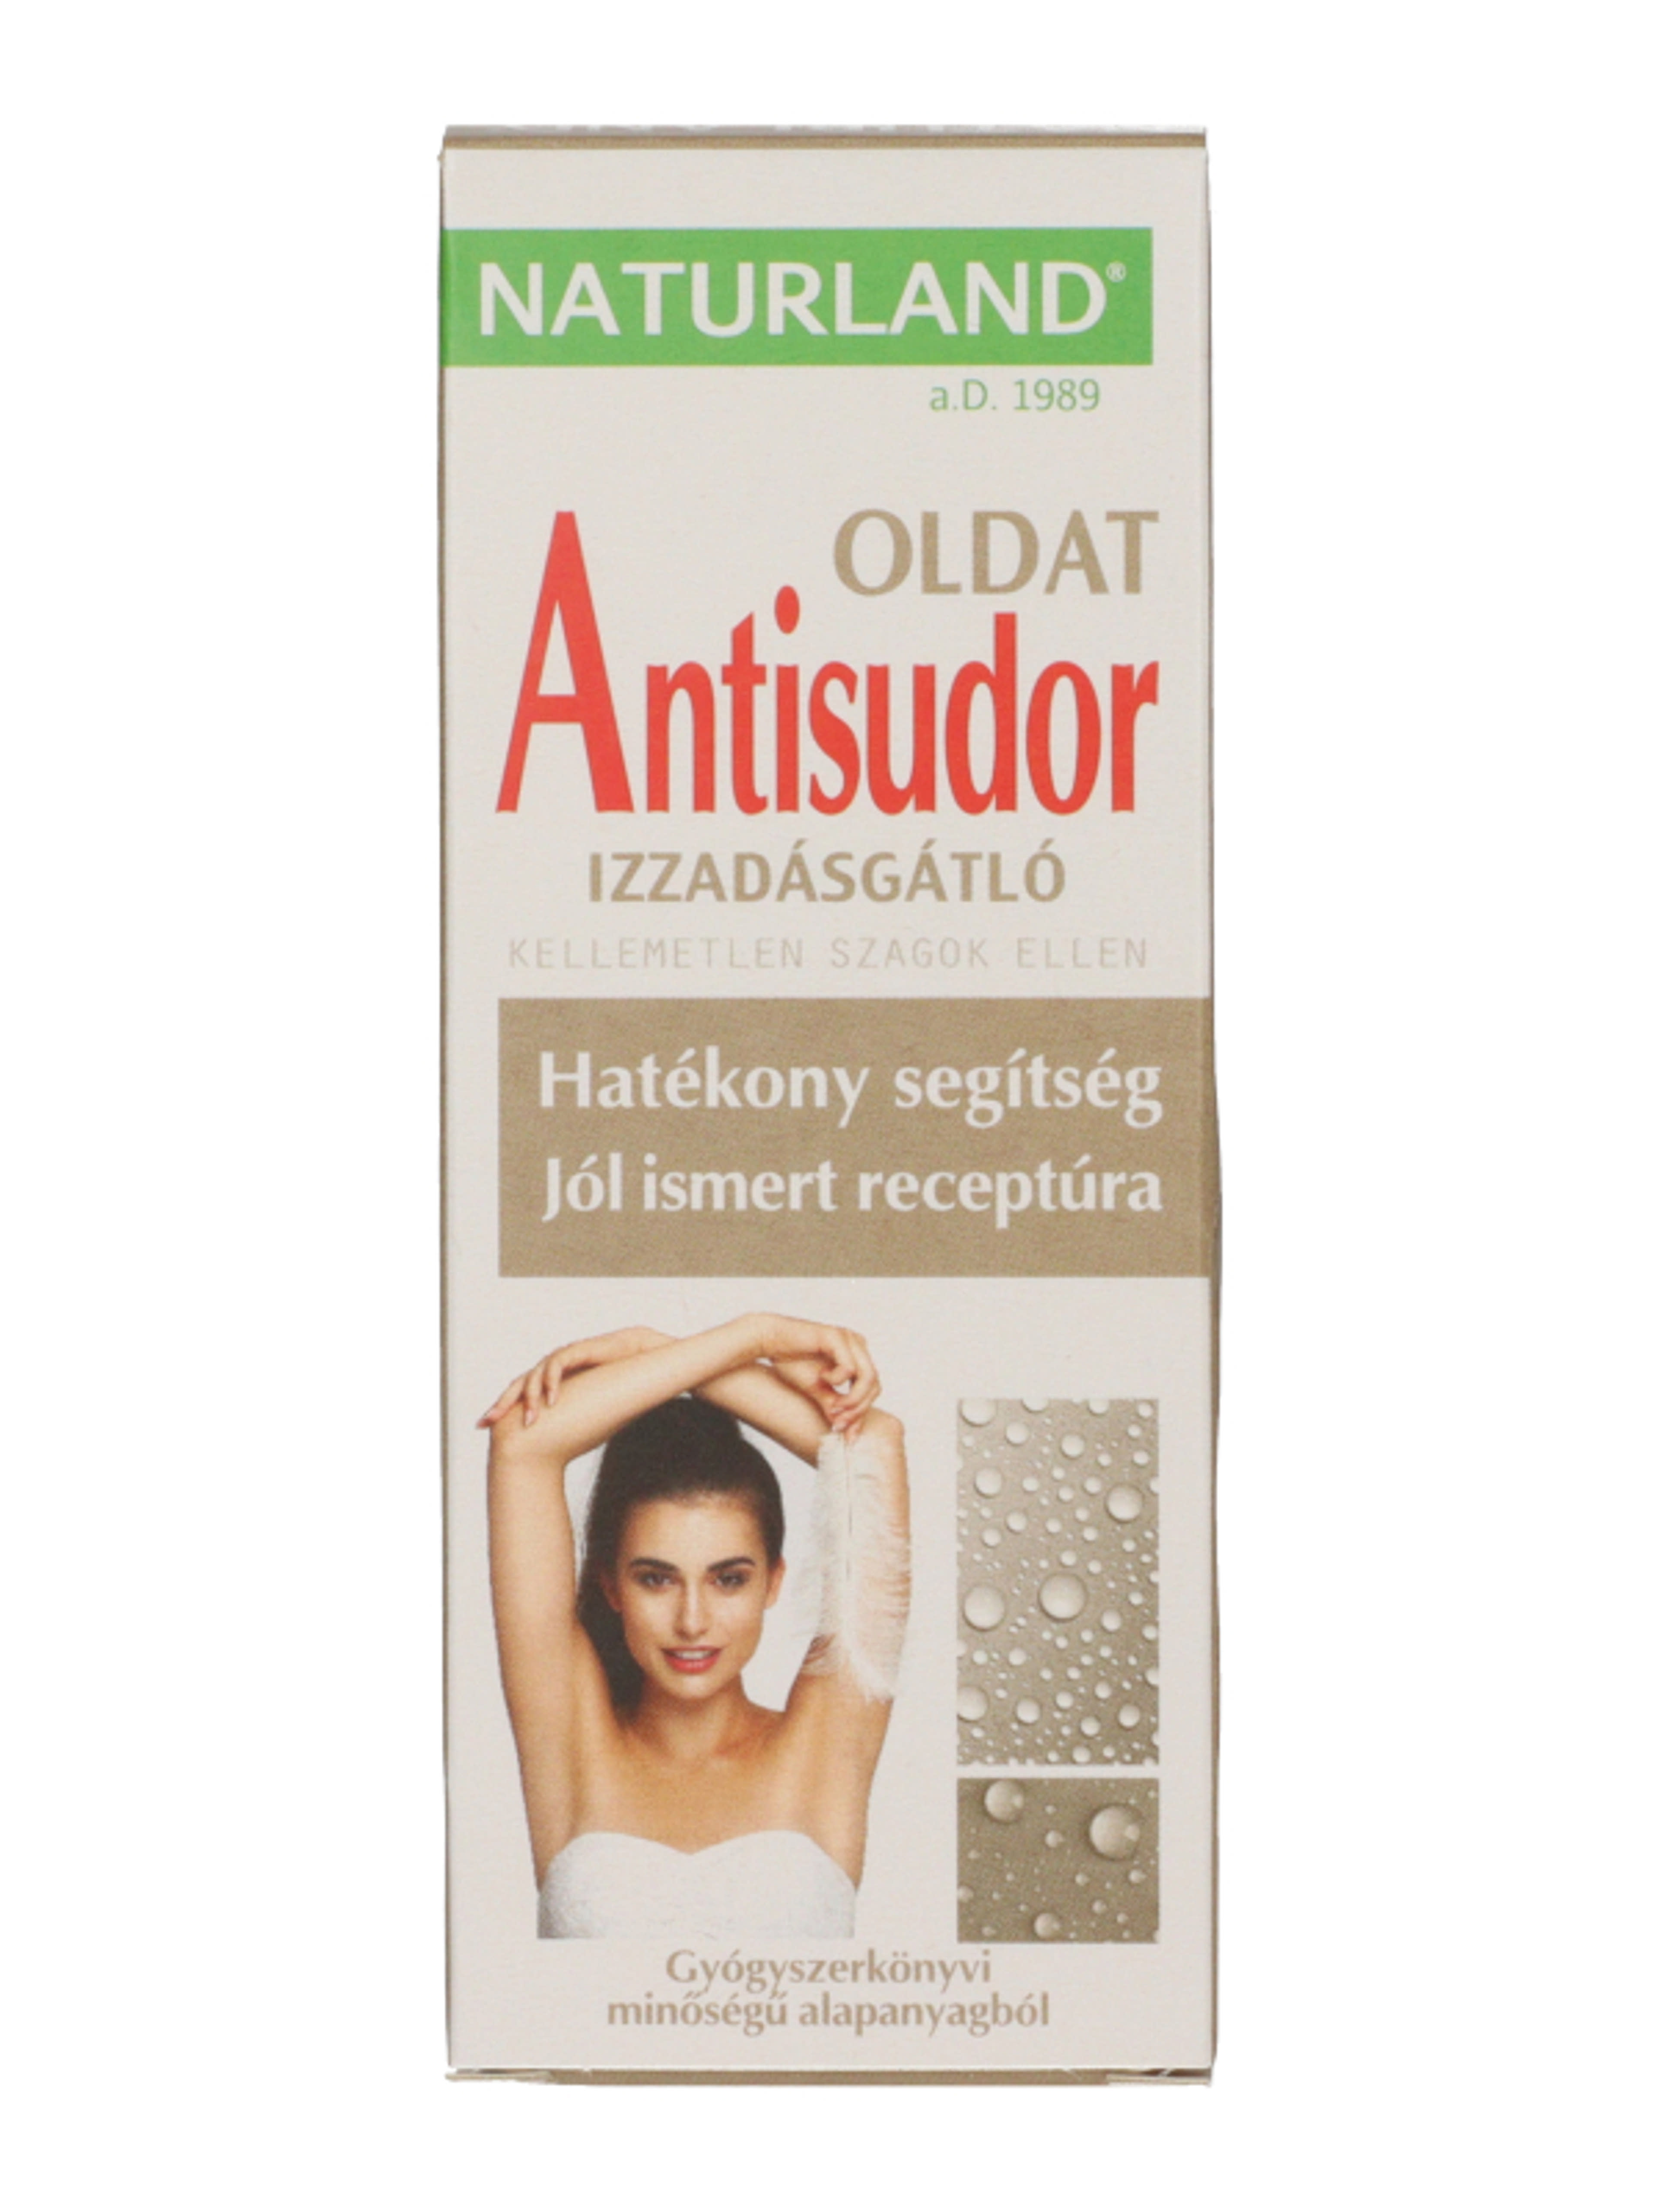 Naturland Antisudor izzadásgátló oldat - 50 ml-1